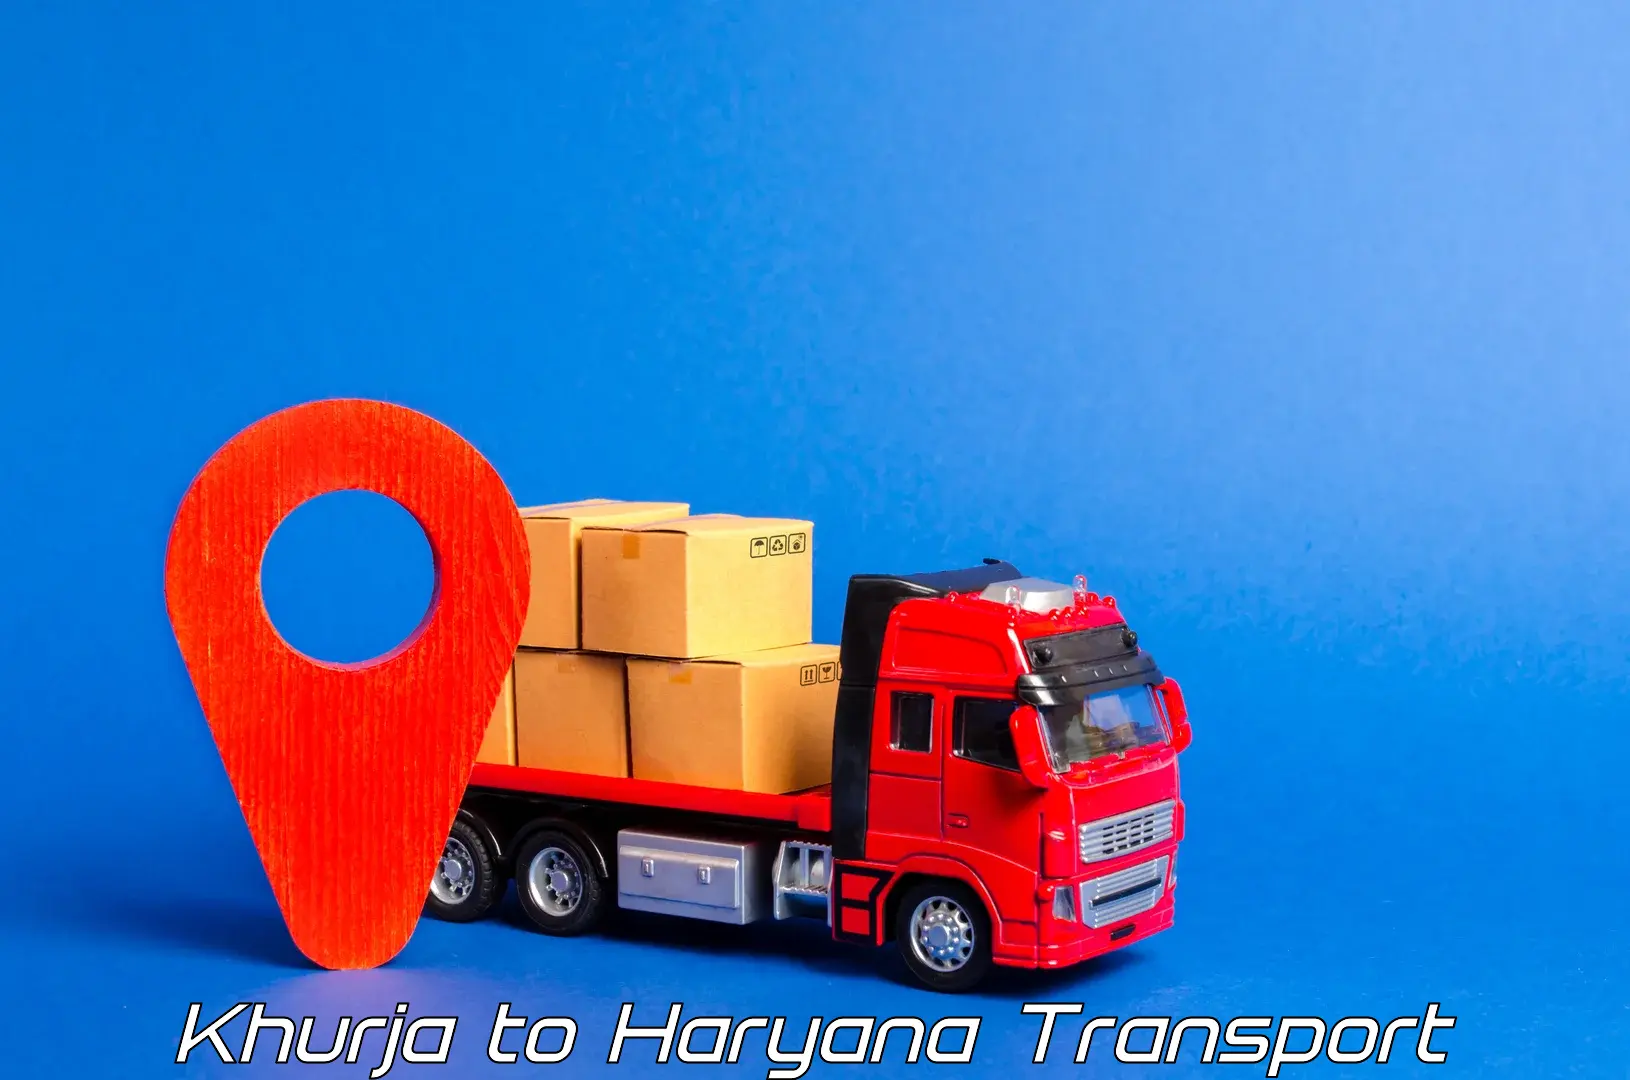 Transport in sharing Khurja to Siwani